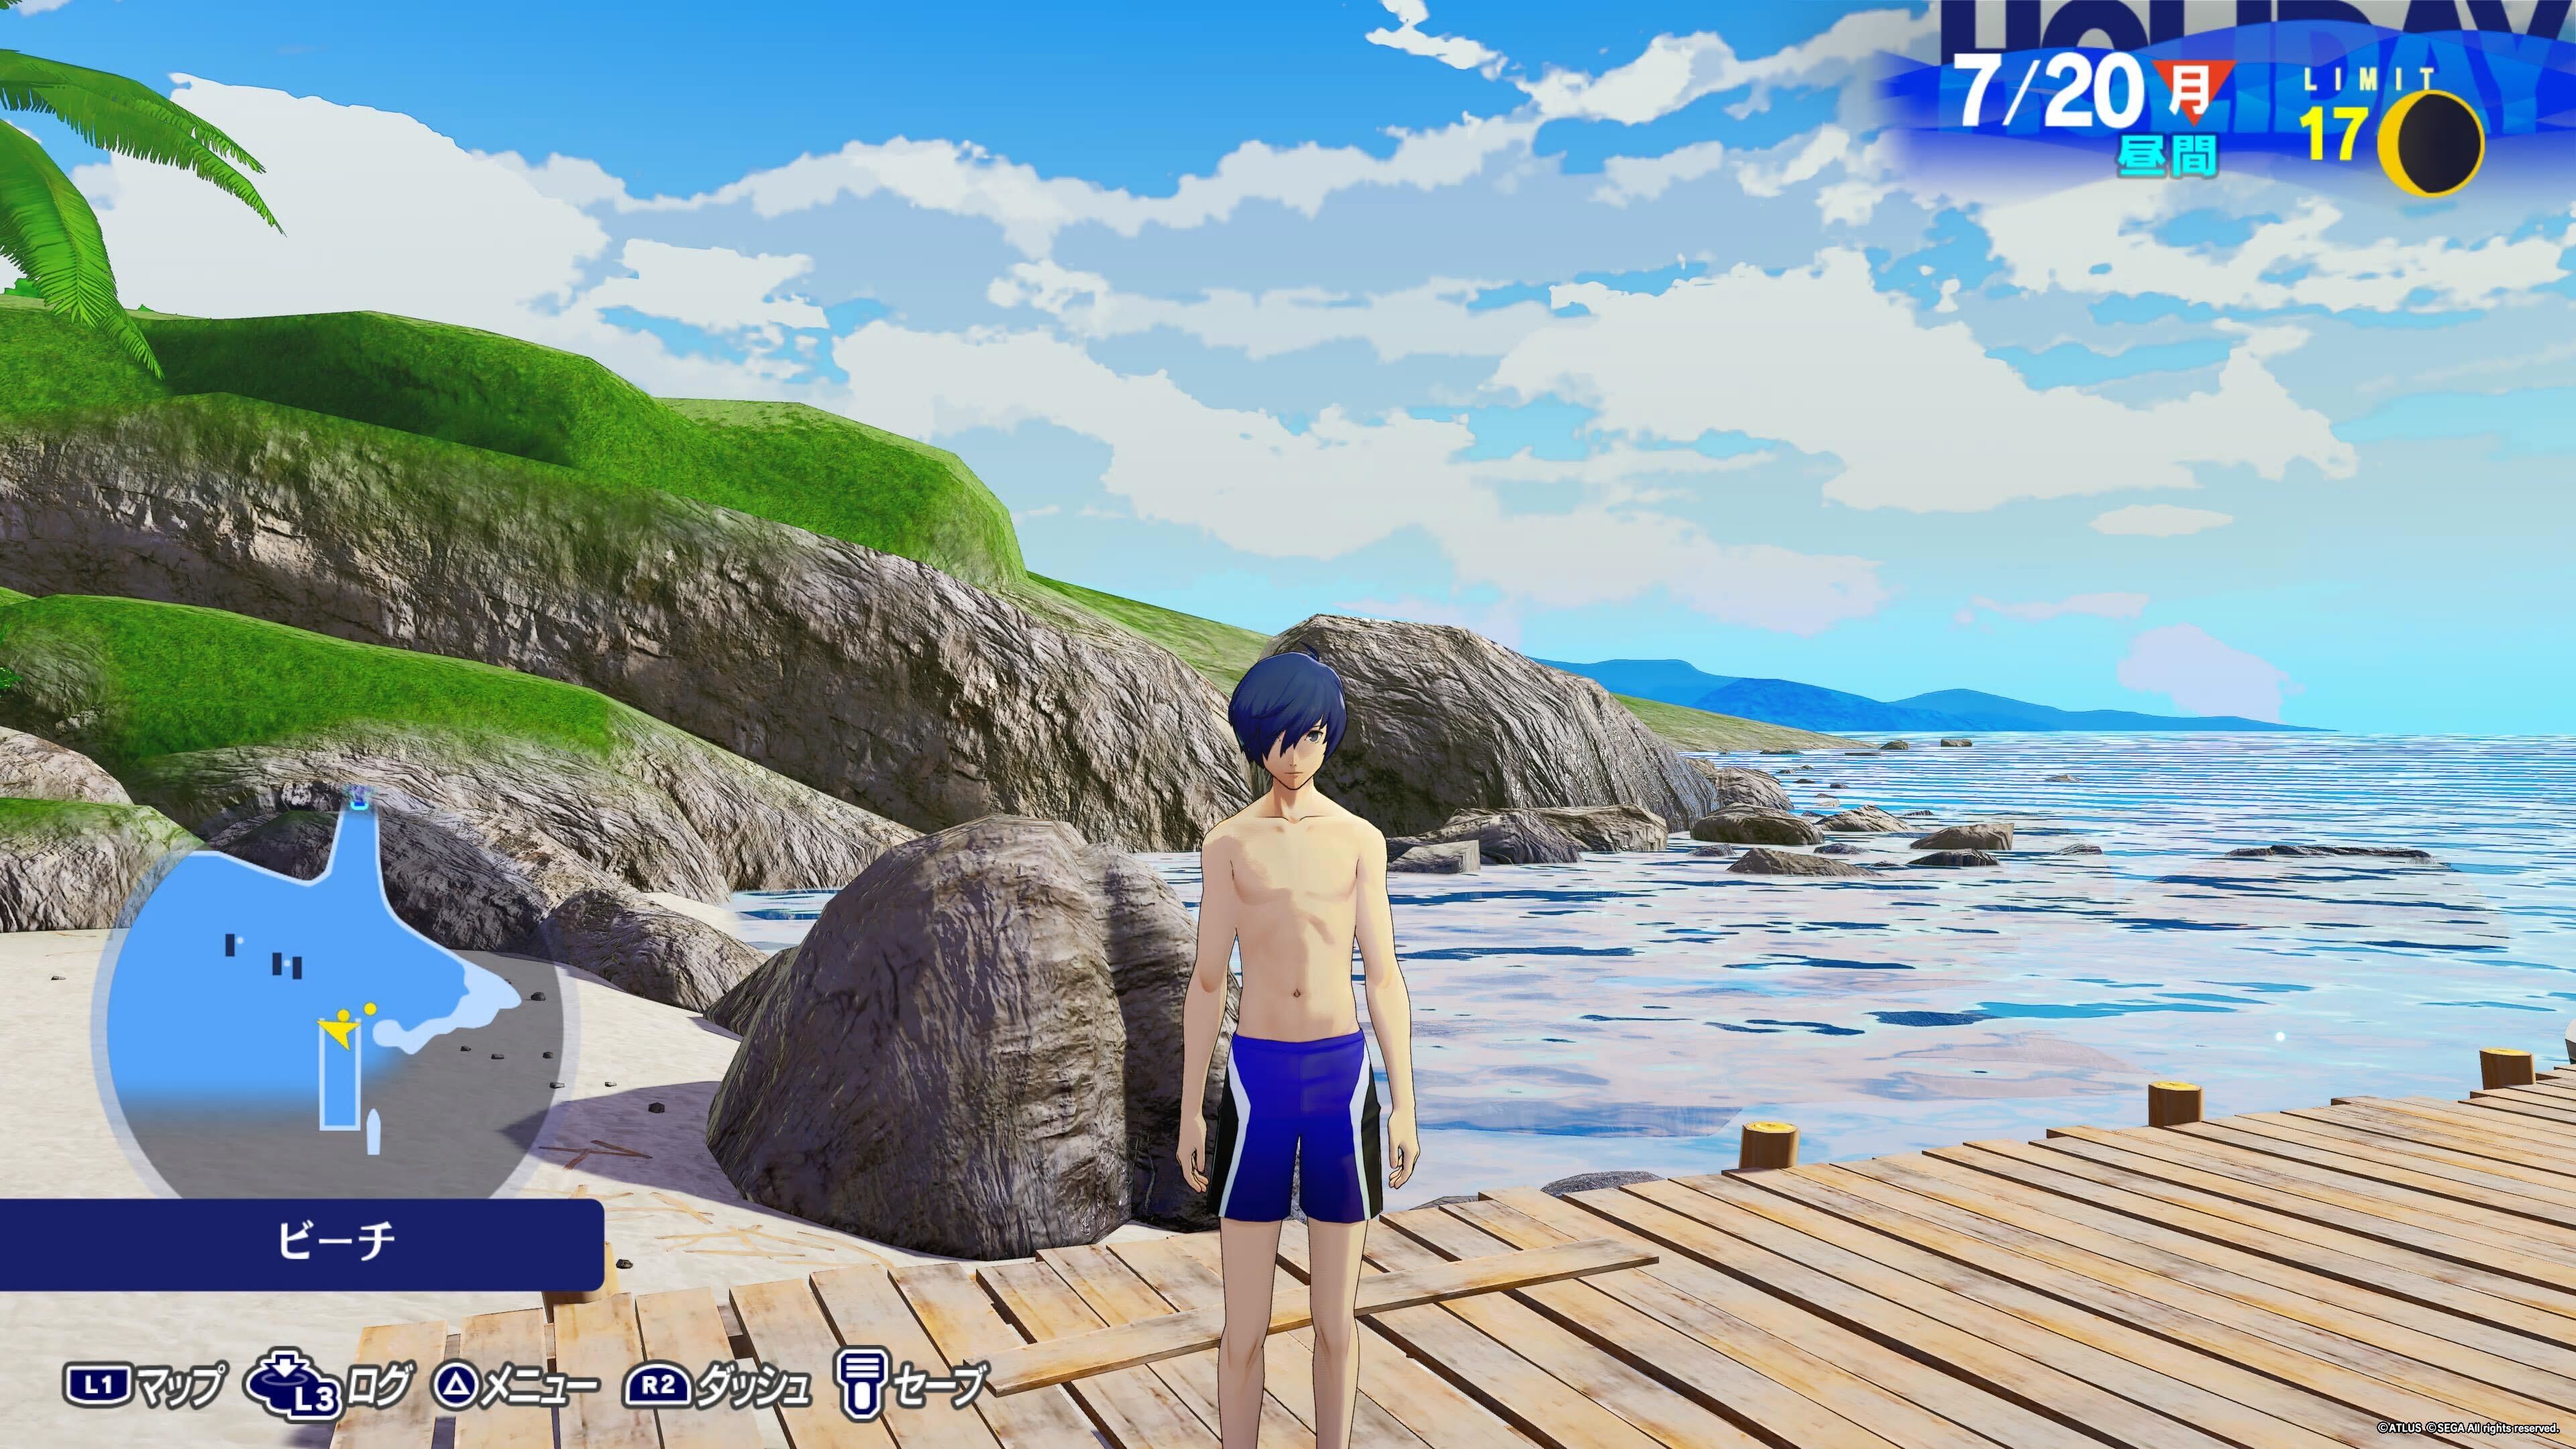 ペルソナ3のスクリーンショット。主人公が水着姿で浜辺を背に映っている。